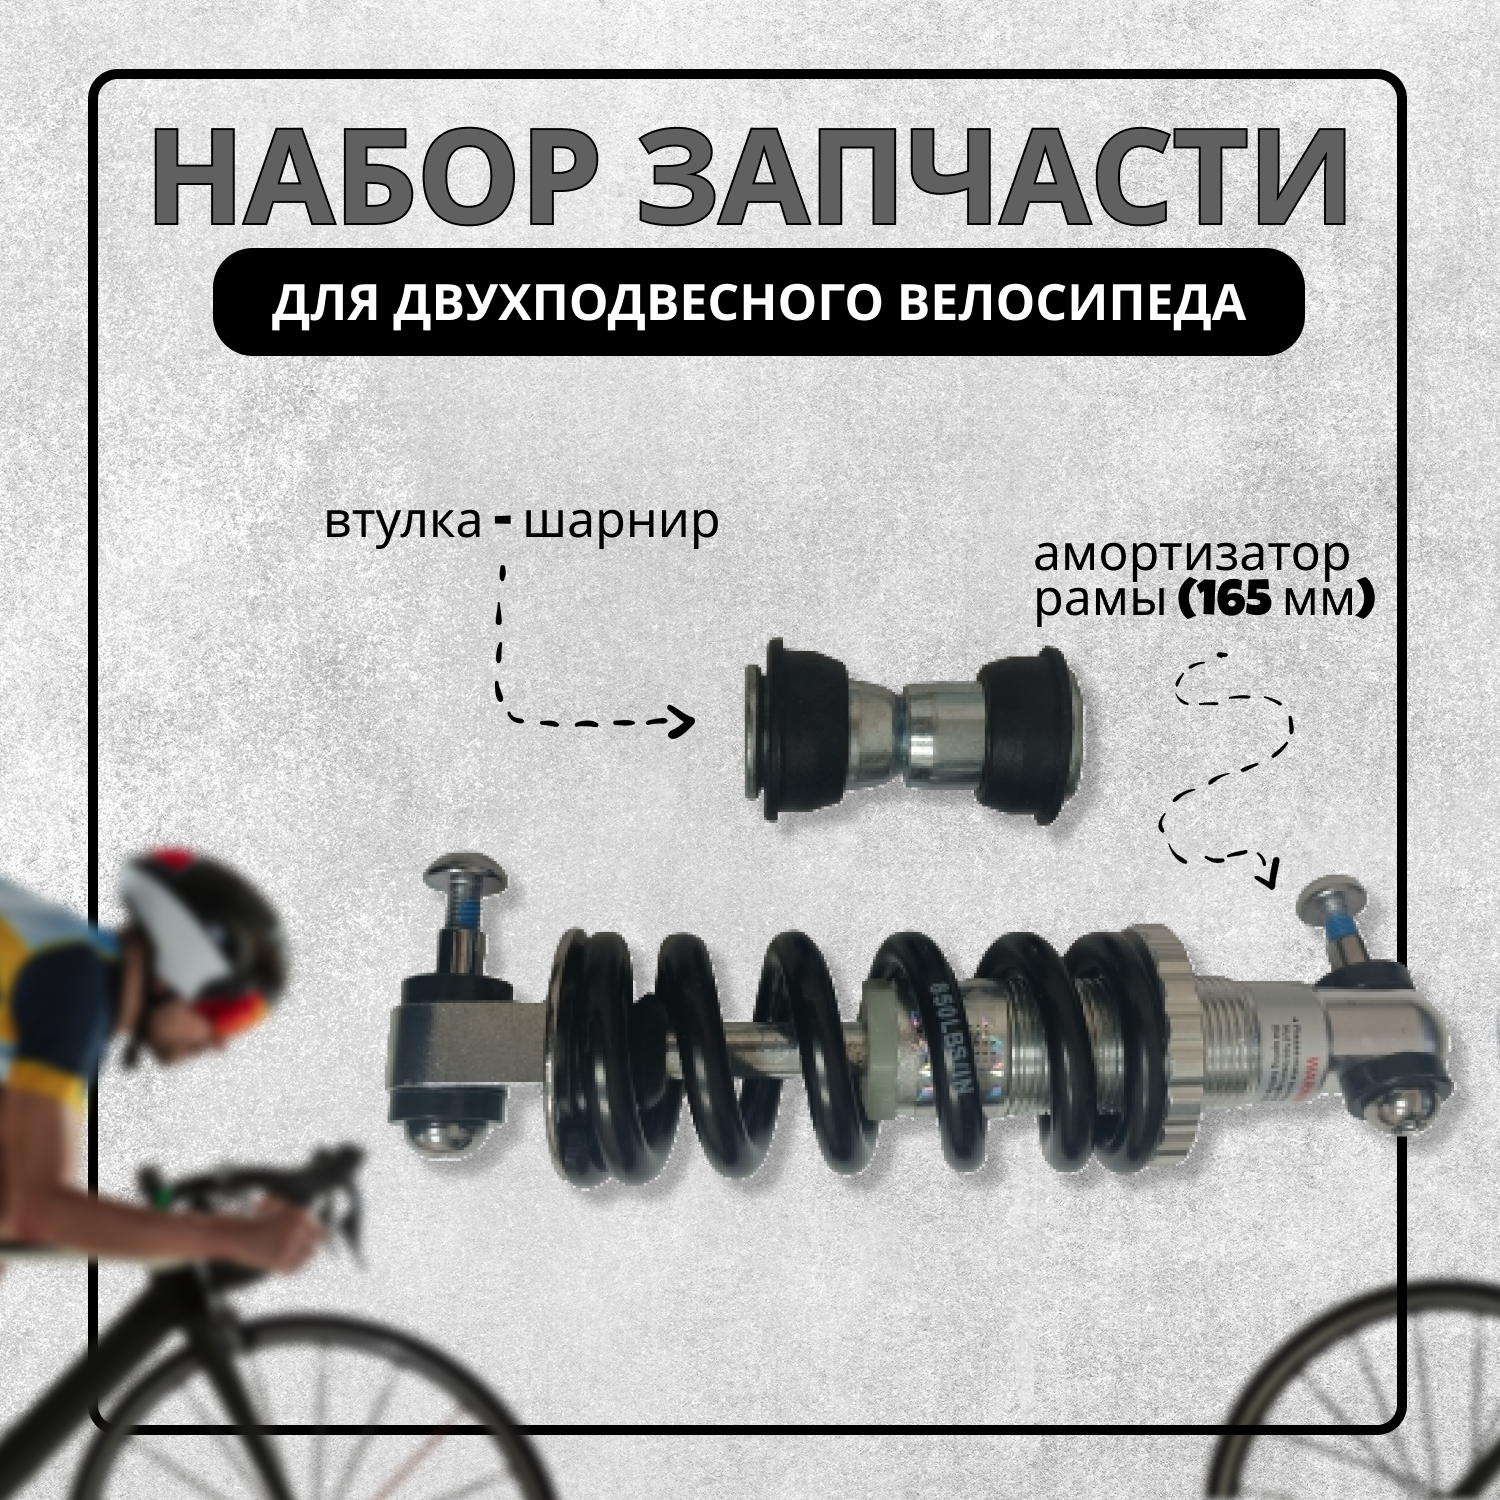 Набор запчасти для двухподвесного велосипеда (амортизатор рамы 165мм+втулка шарнир)